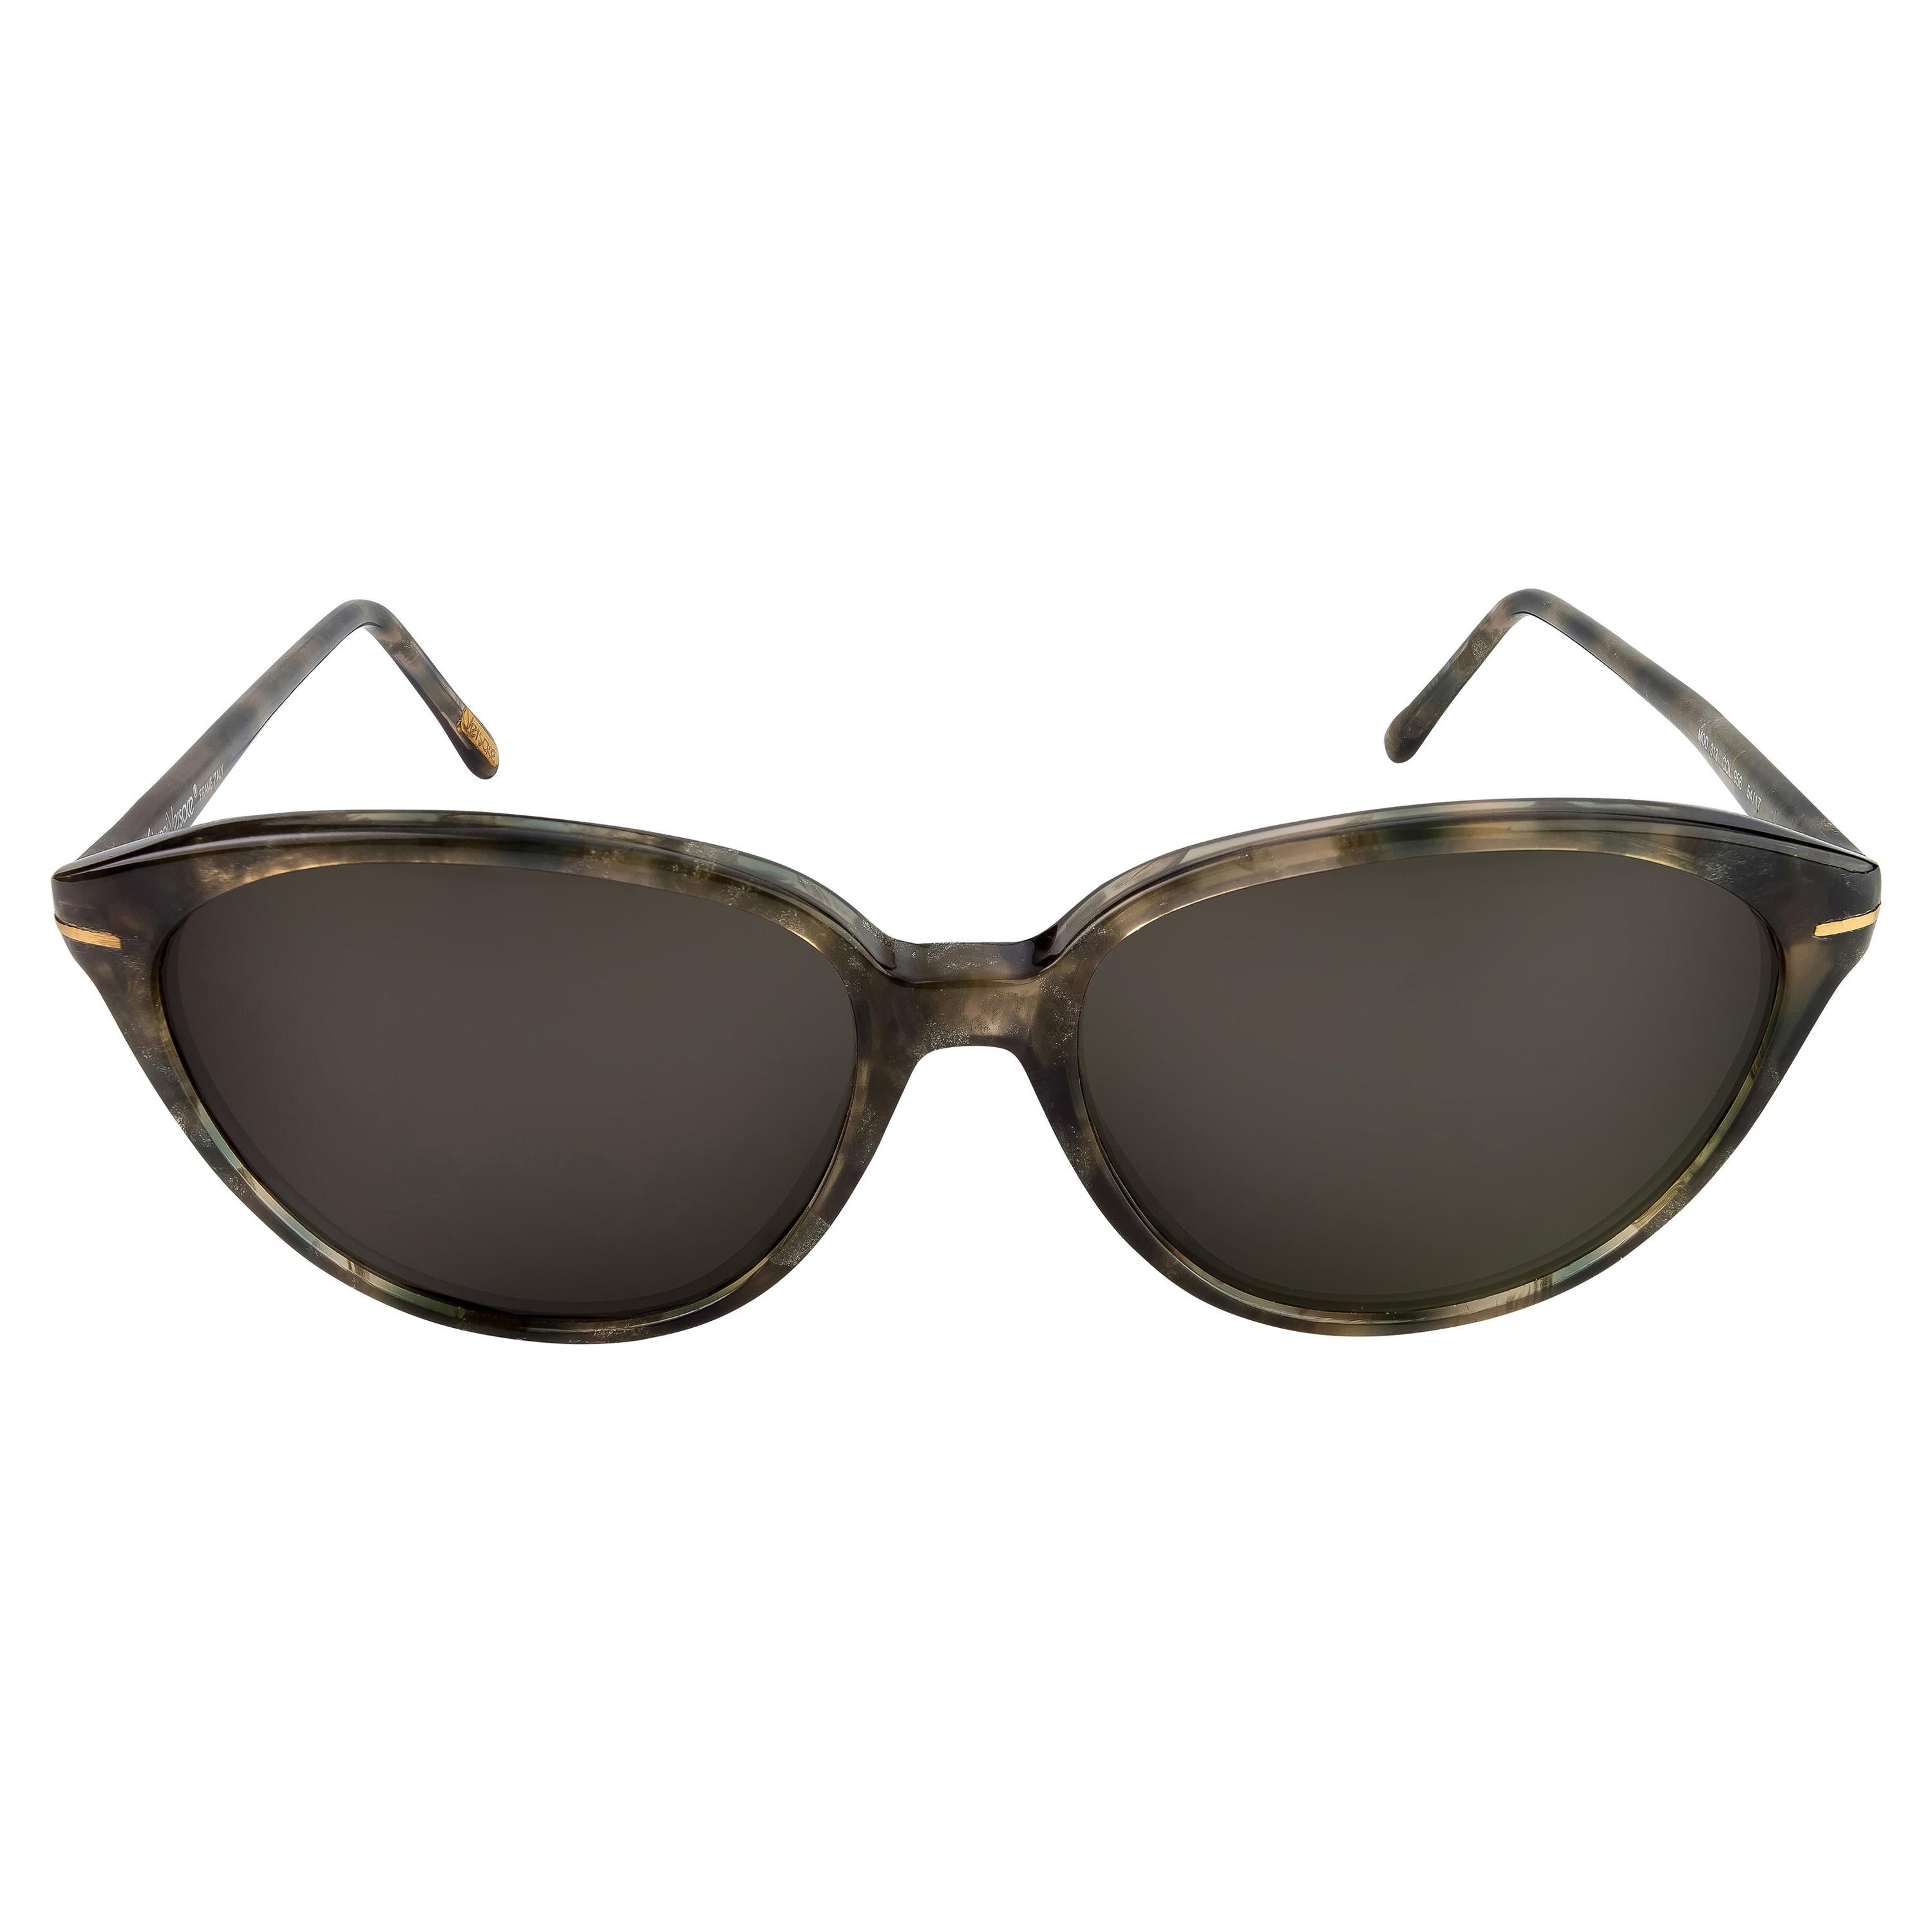 Gianni Versace cat eye sunglasses